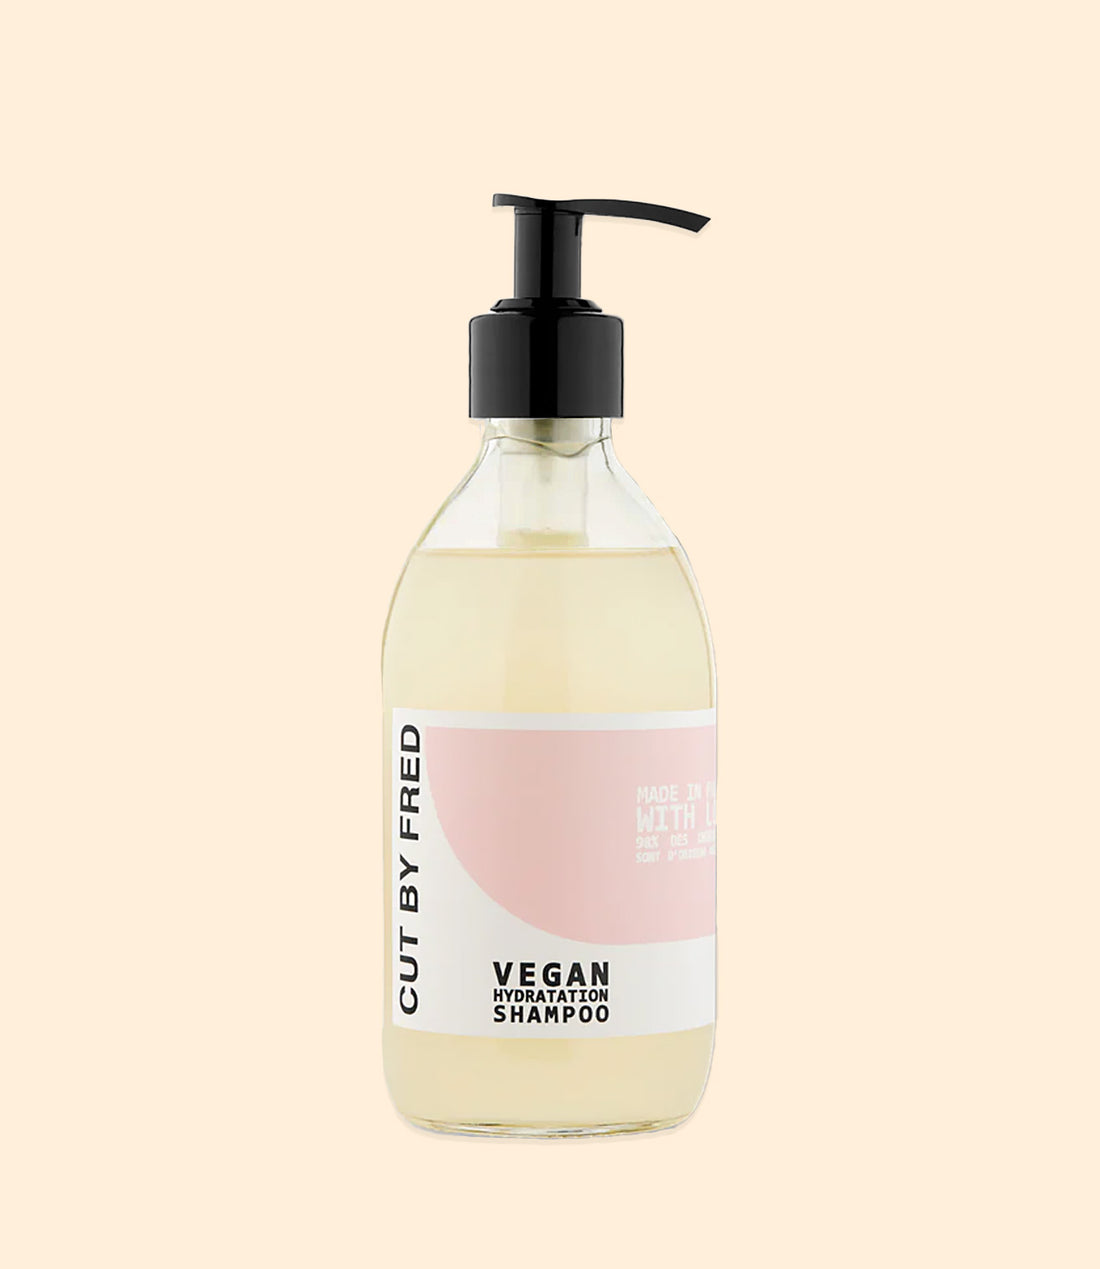 Vegan Hydratation Shampoo par Cut by Fred